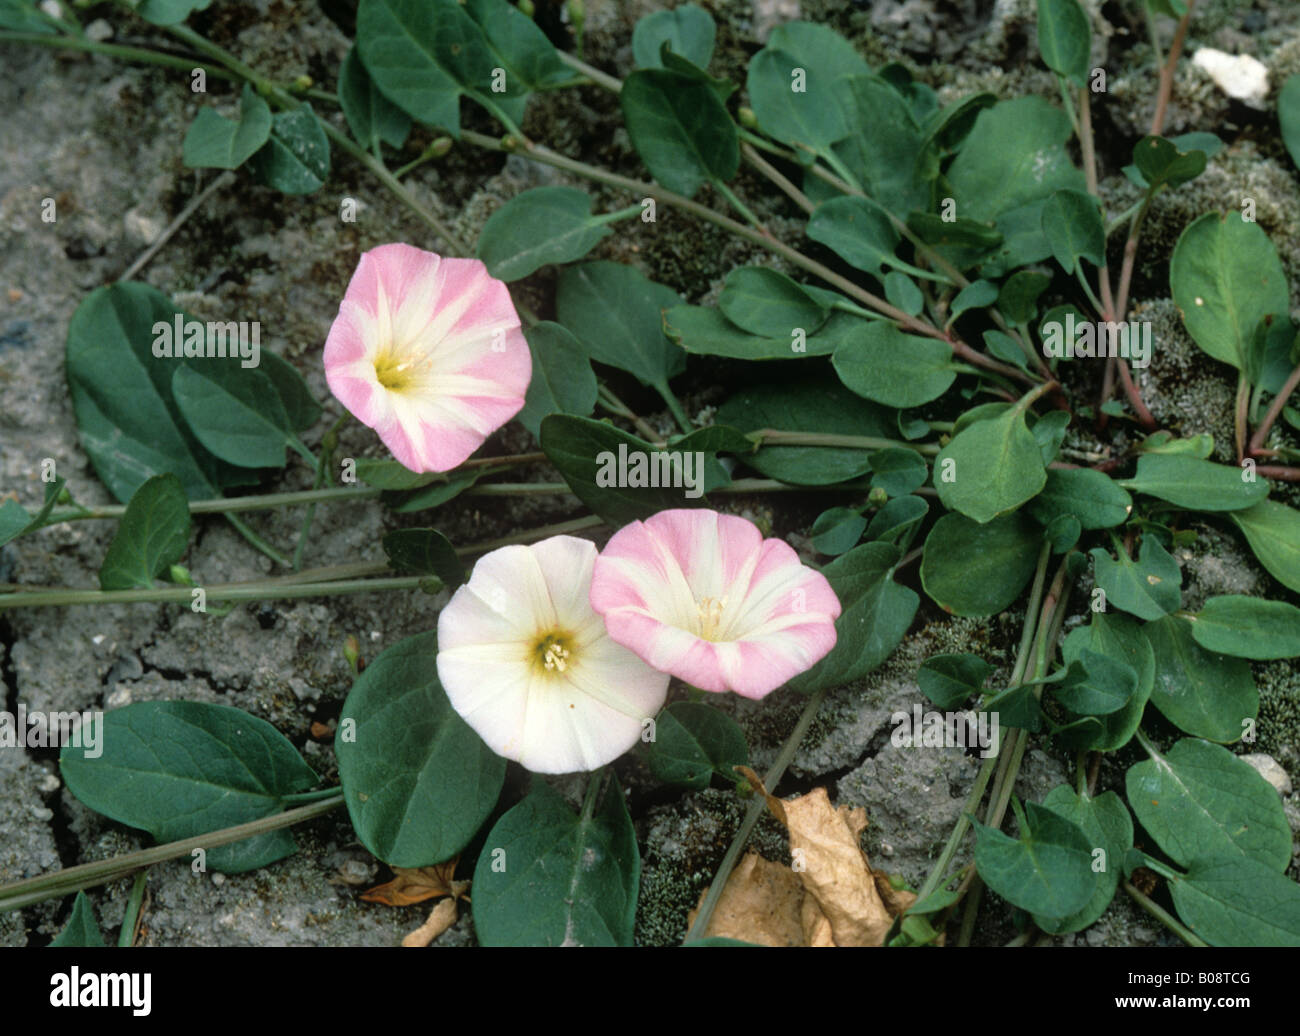 Campo centinodia Convolvulus arvense fioritura di erbaccia annuale Foto Stock